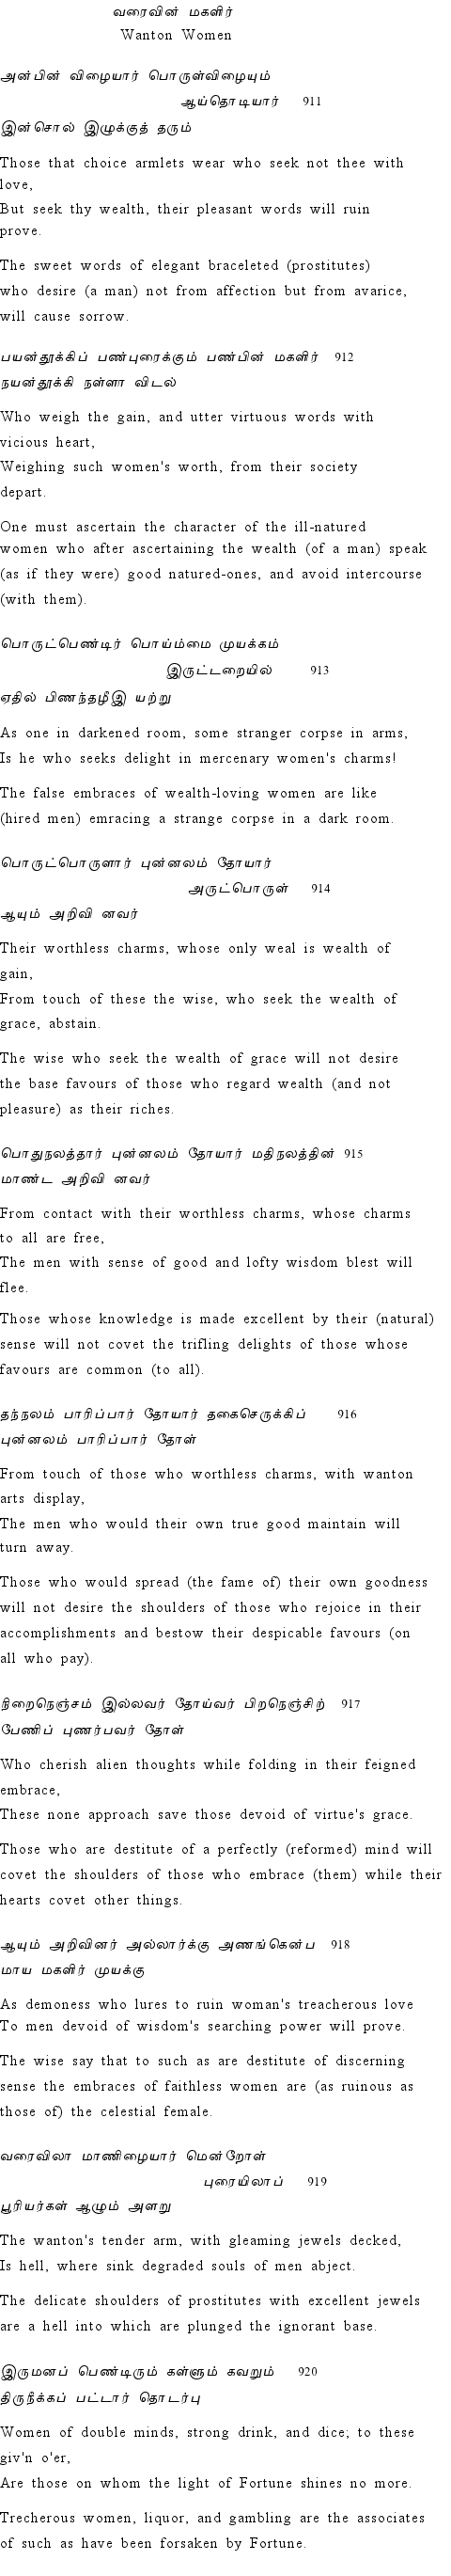 Text of Adhikaram 92